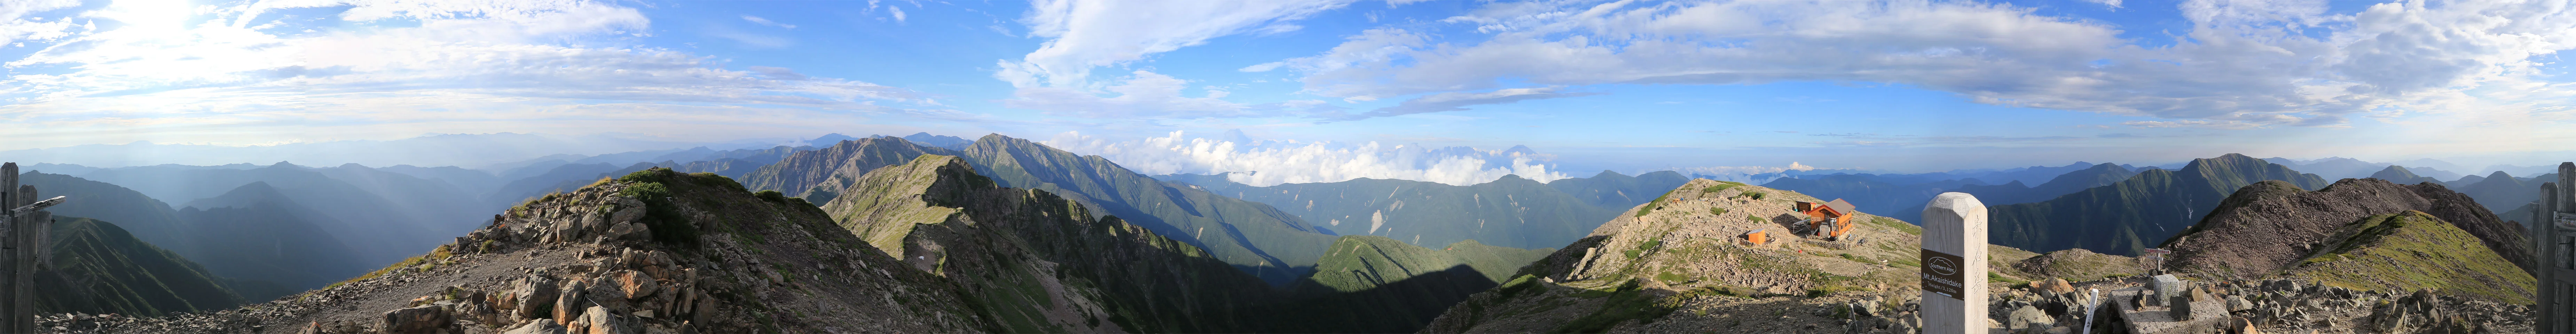 赤石岳からのパノラマ写真